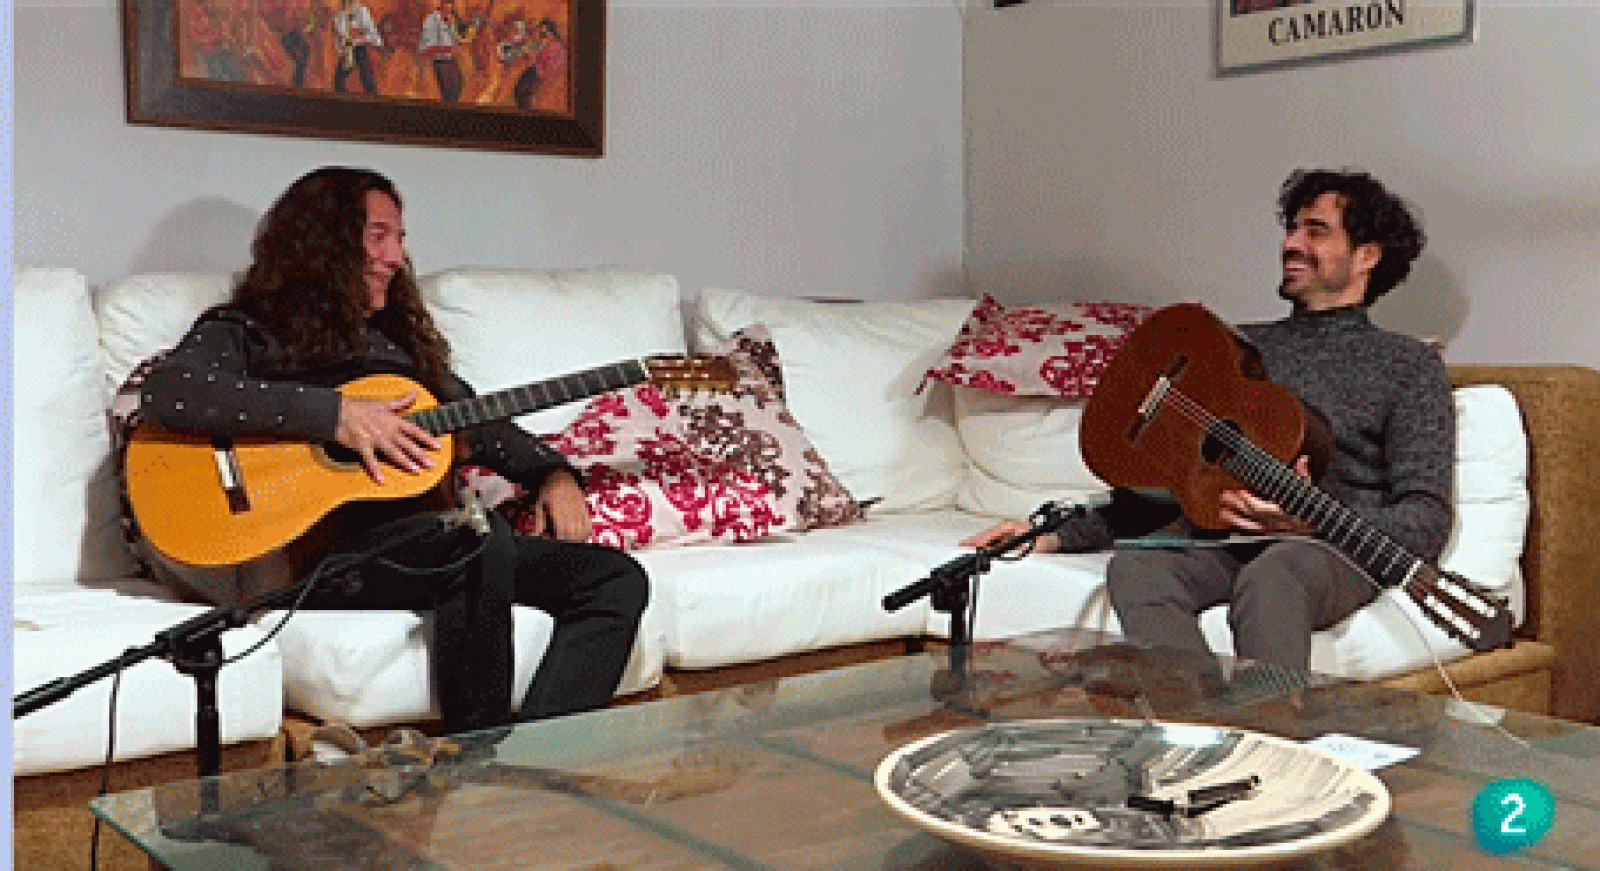 La aventura del saber - Tomatito y Sáinz Villegas, el encuentro de dos guitarras. 1ª parte